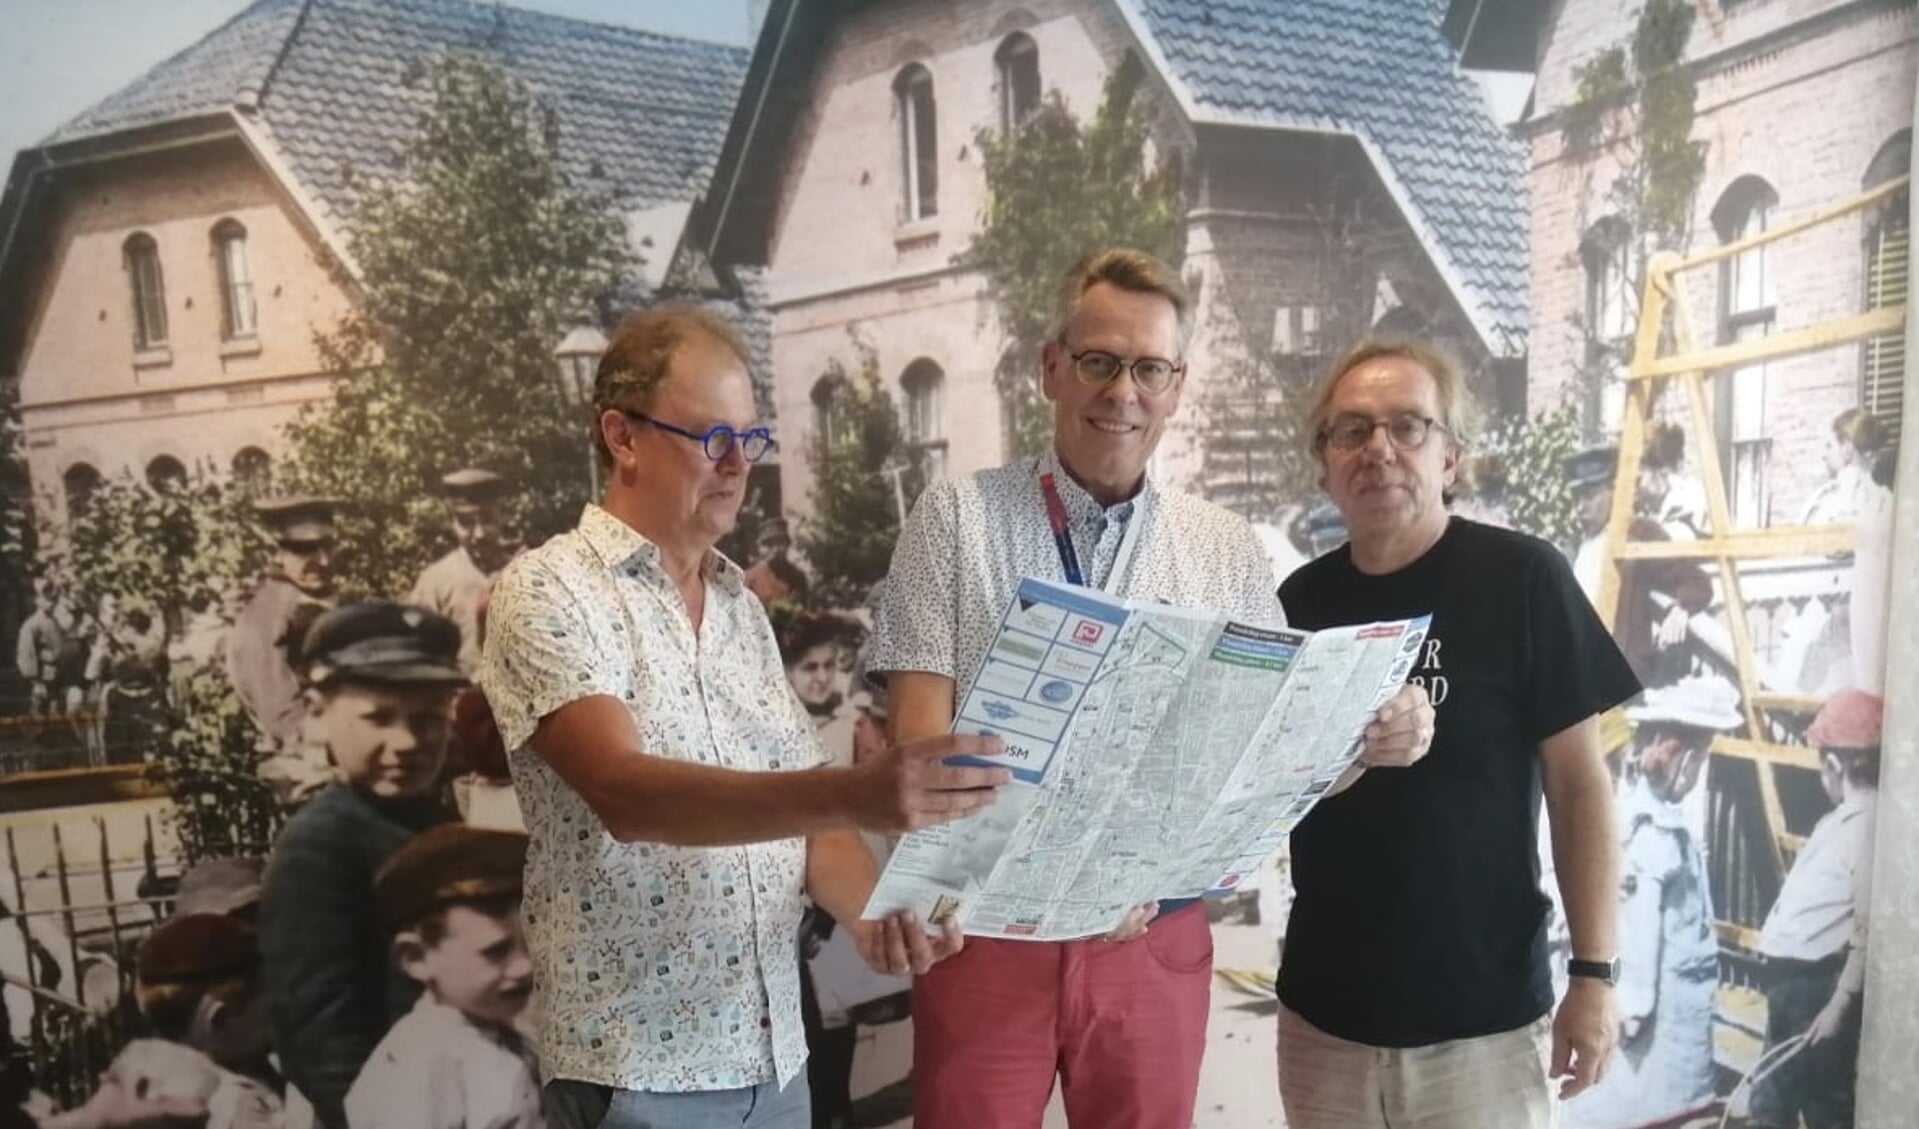 Rob Trompper, Bram Reijke en Jan van der Mast: verguld met de Van Marken wandelroute